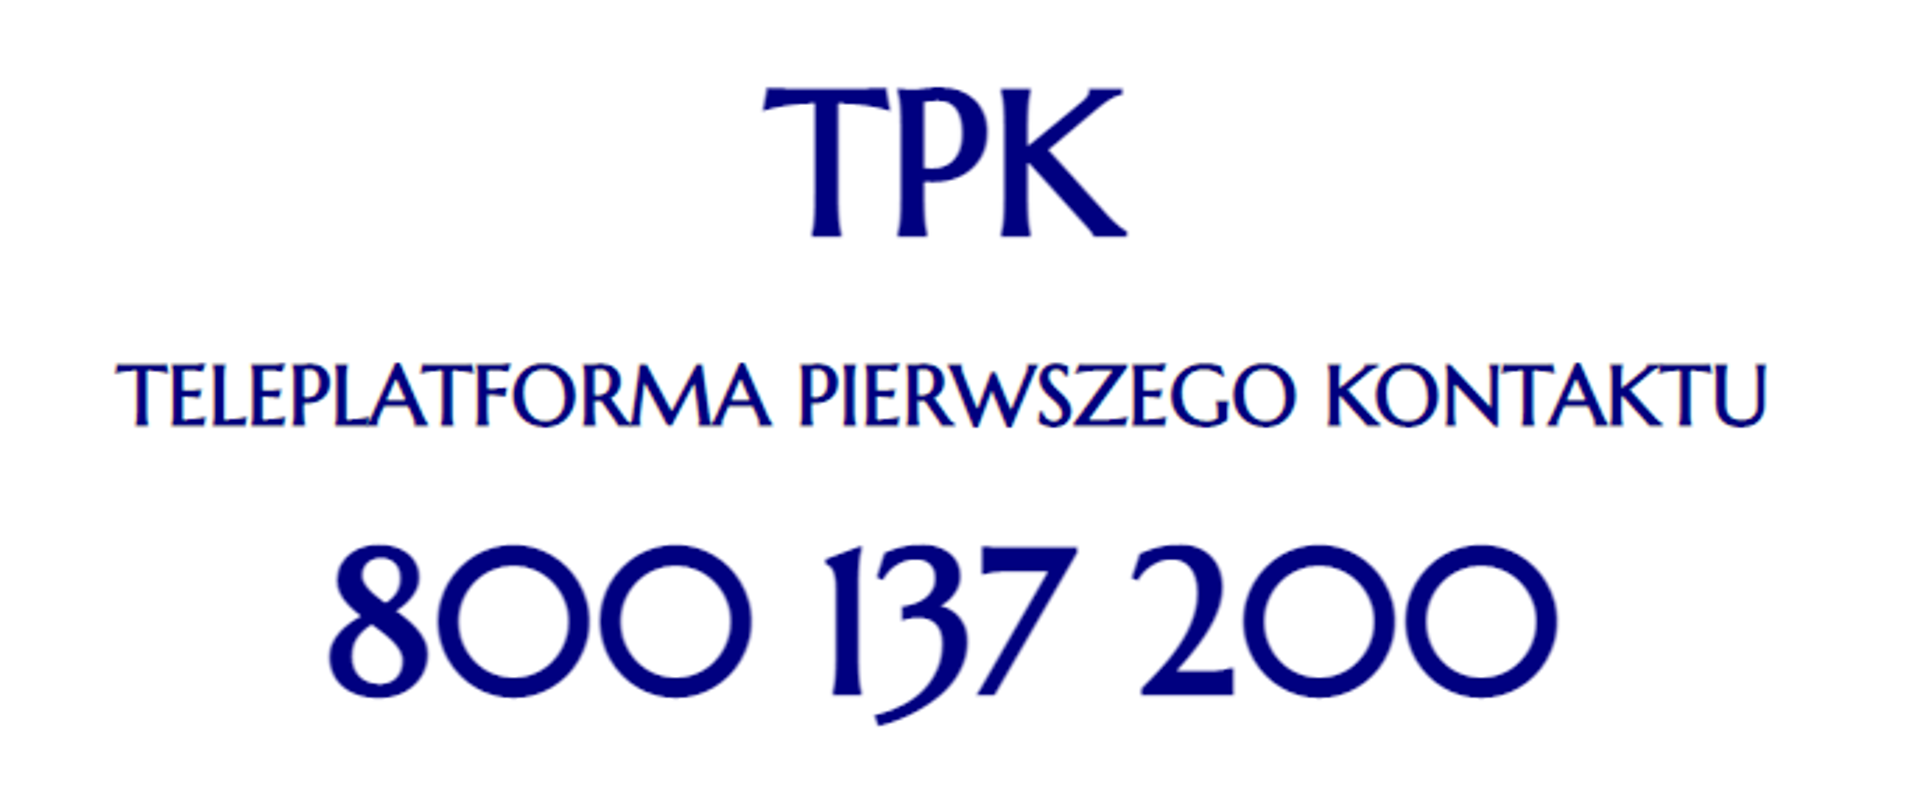 Logo "TPK - Teleplatforma Pierwszego Kontaktu"